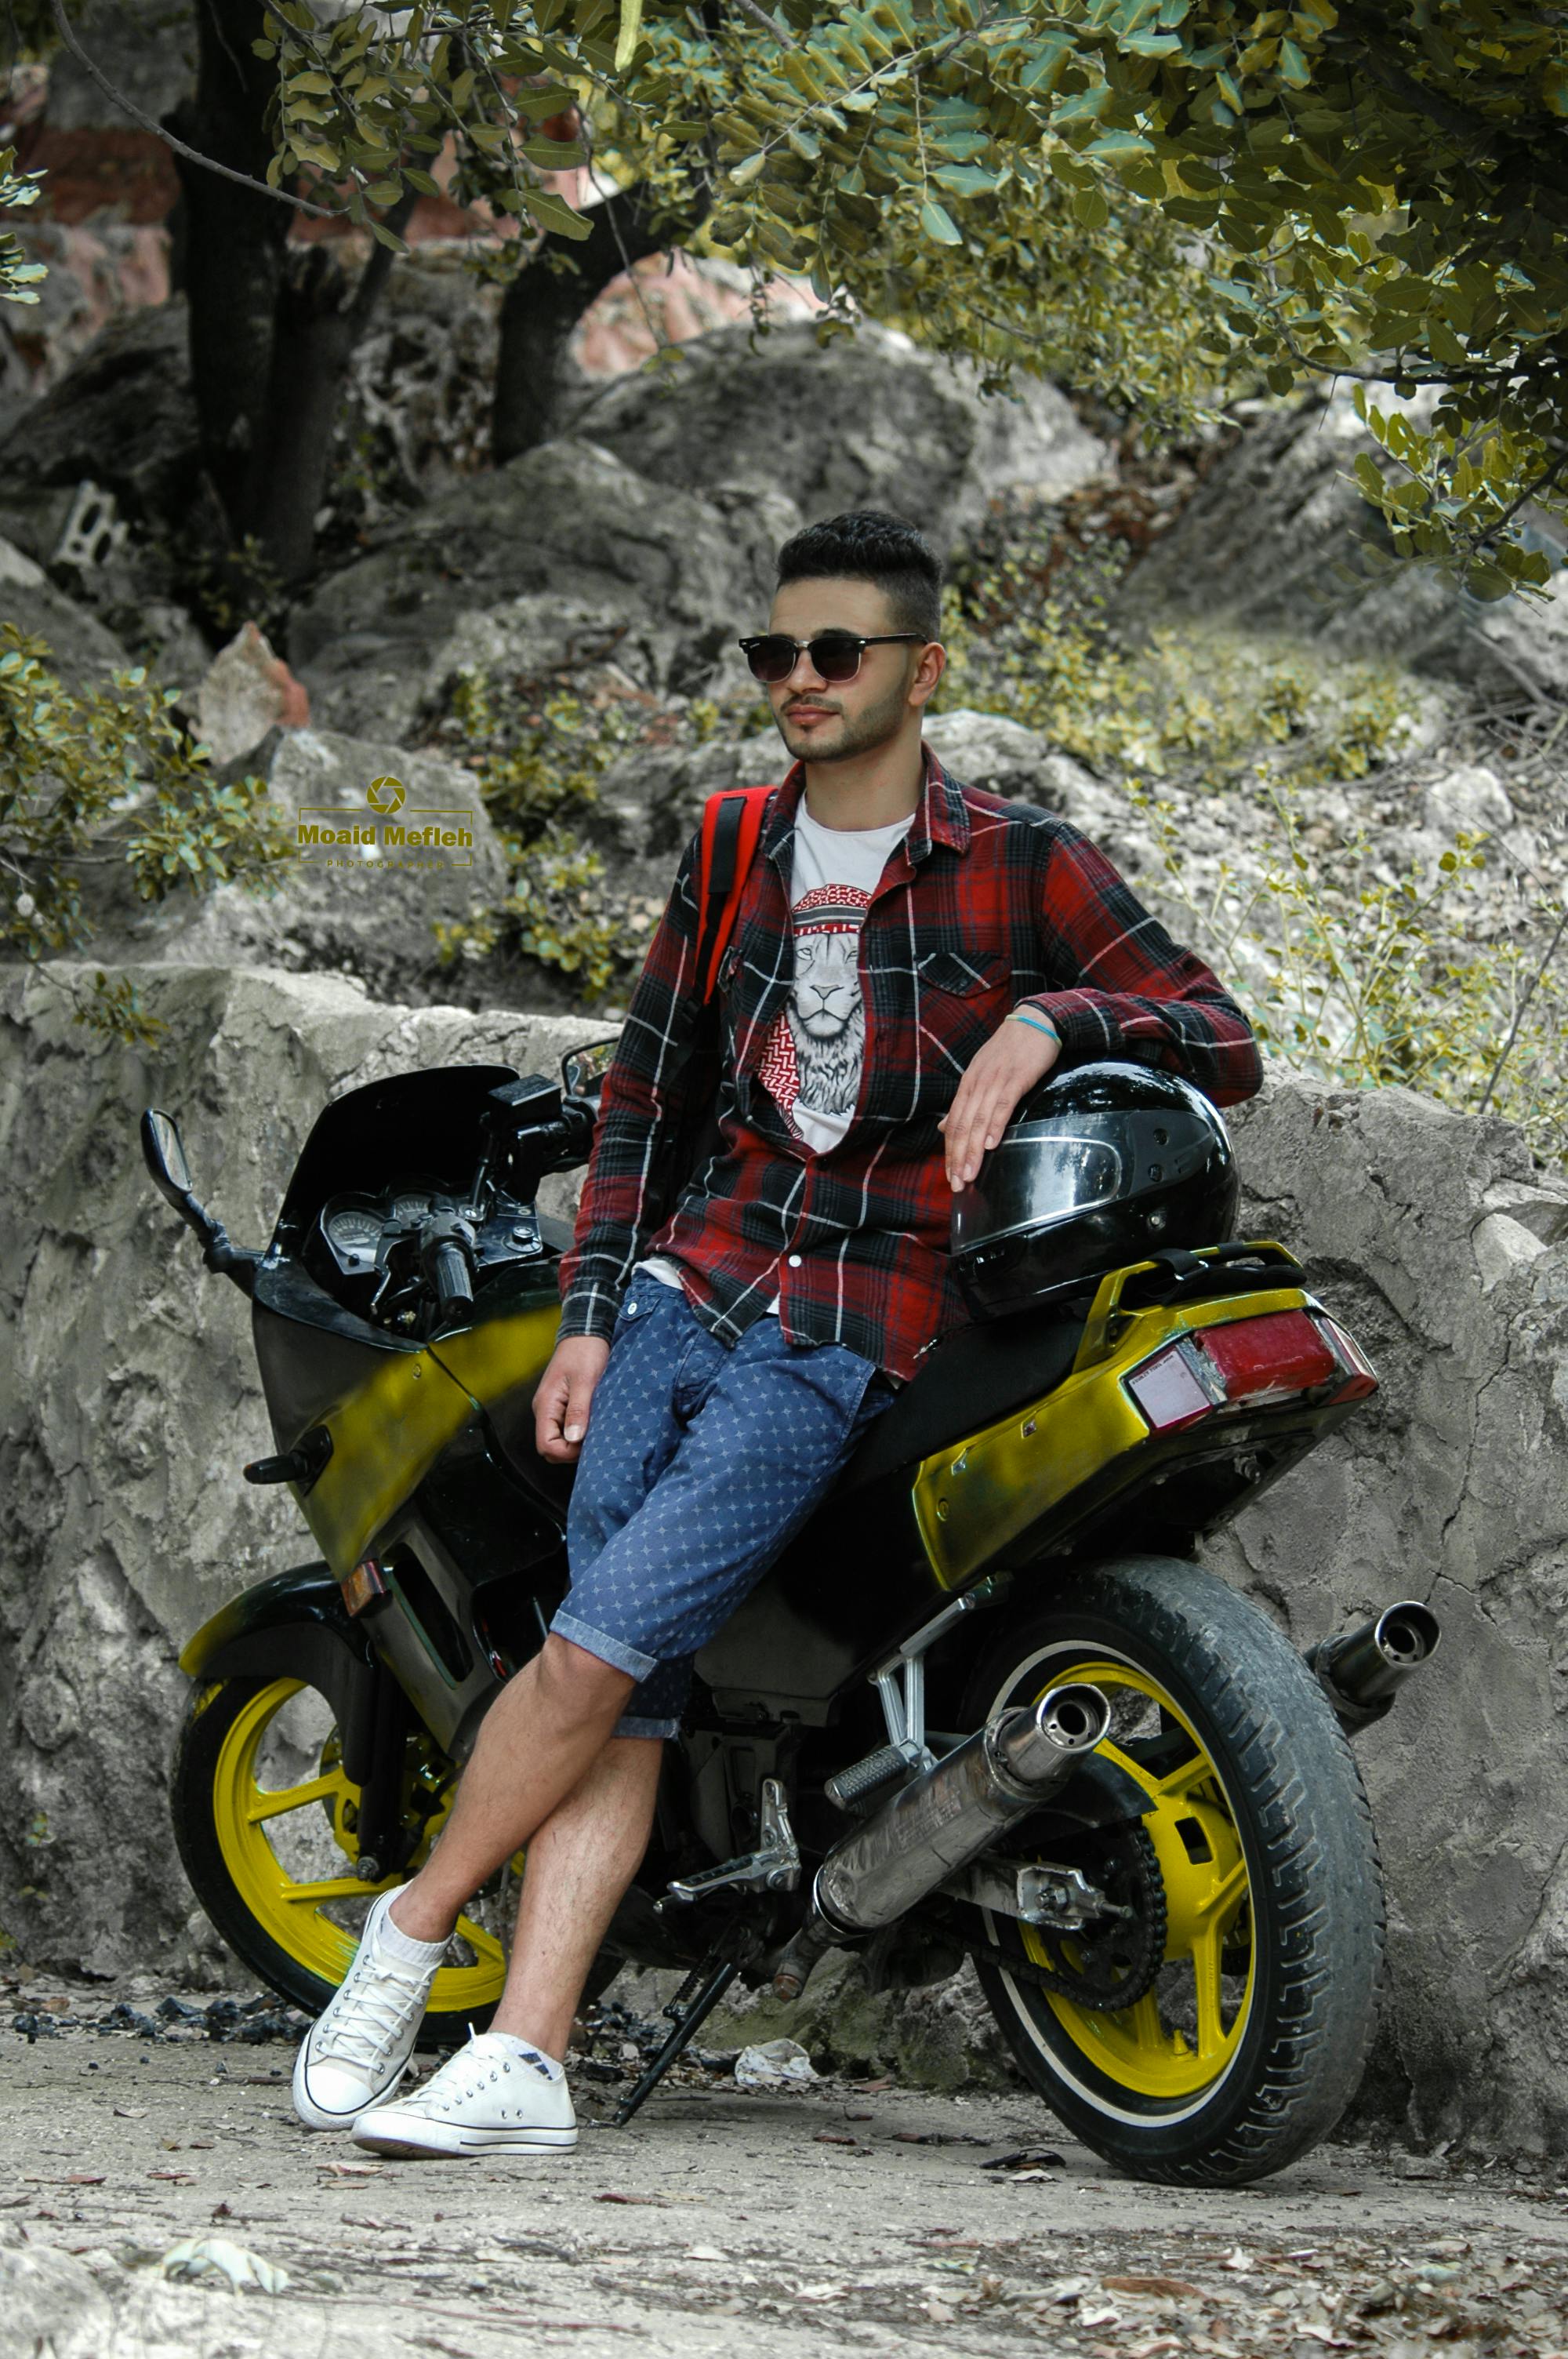 Motorcycle Photoshoot Ideas